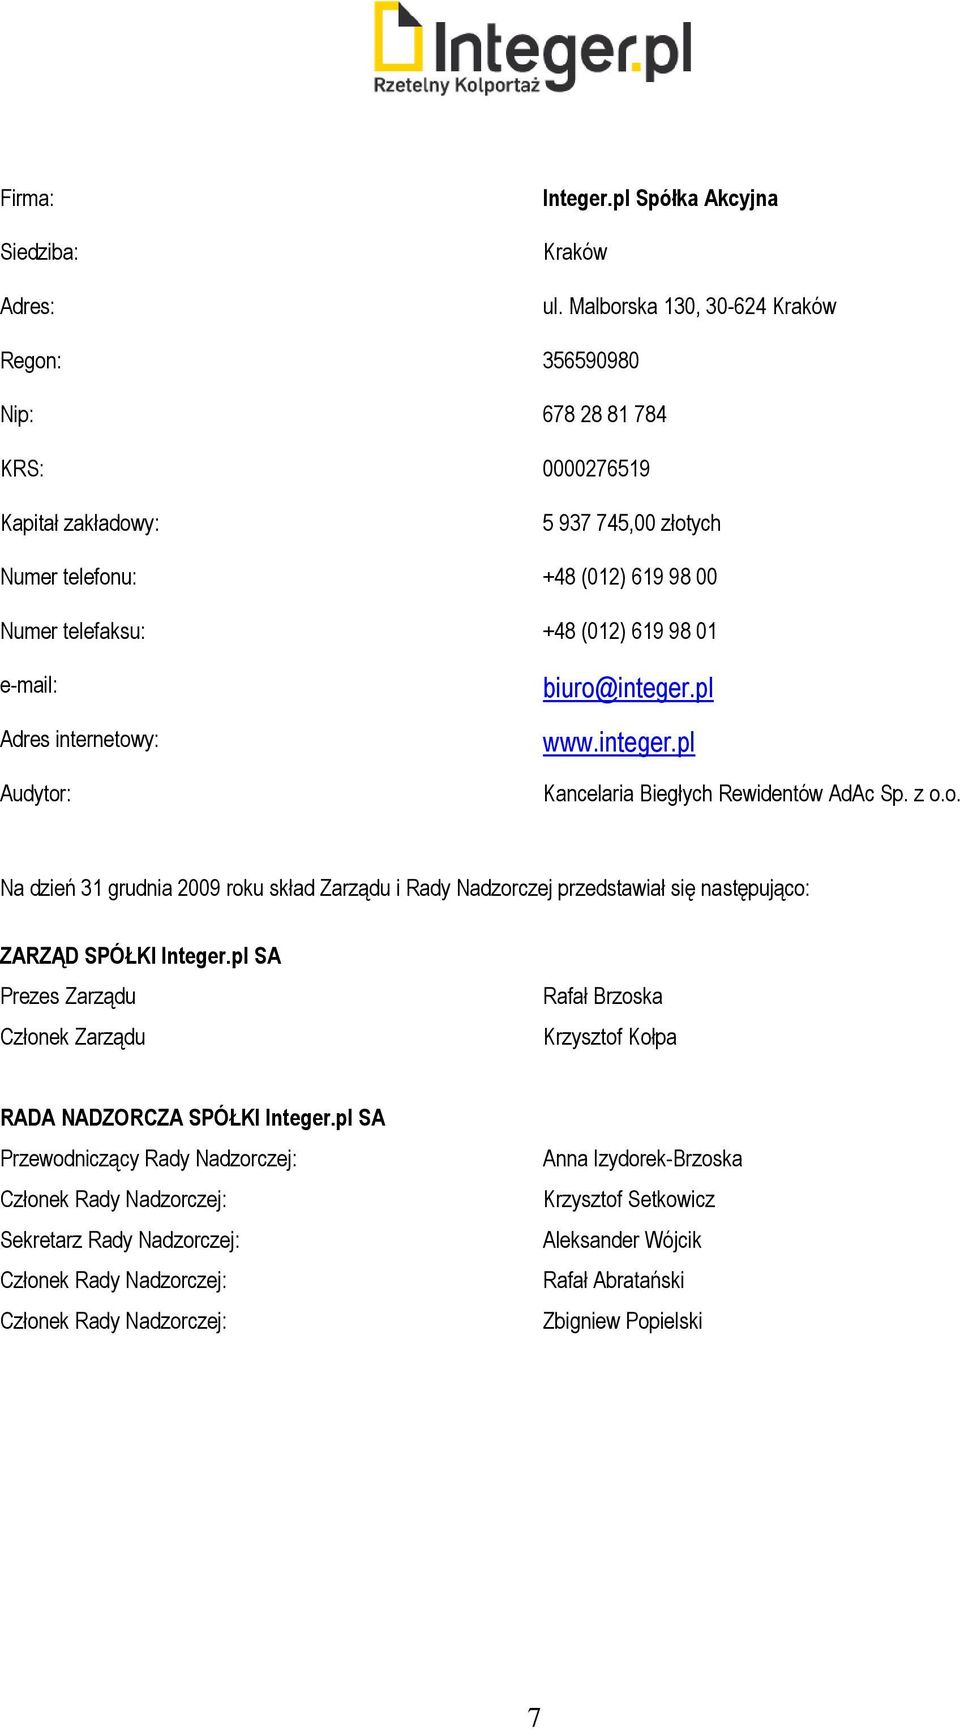 e-mail: Adres internetowy: Audytor: biuro@integer.pl www.integer.pl Kancelaria Biegłych Rewidentów AdAc Sp. z o.o. Na dzień roku skład Zarządu i Rady Nadzorczej przedstawiał się następująco: ZARZĄD SPÓŁKI Integer.